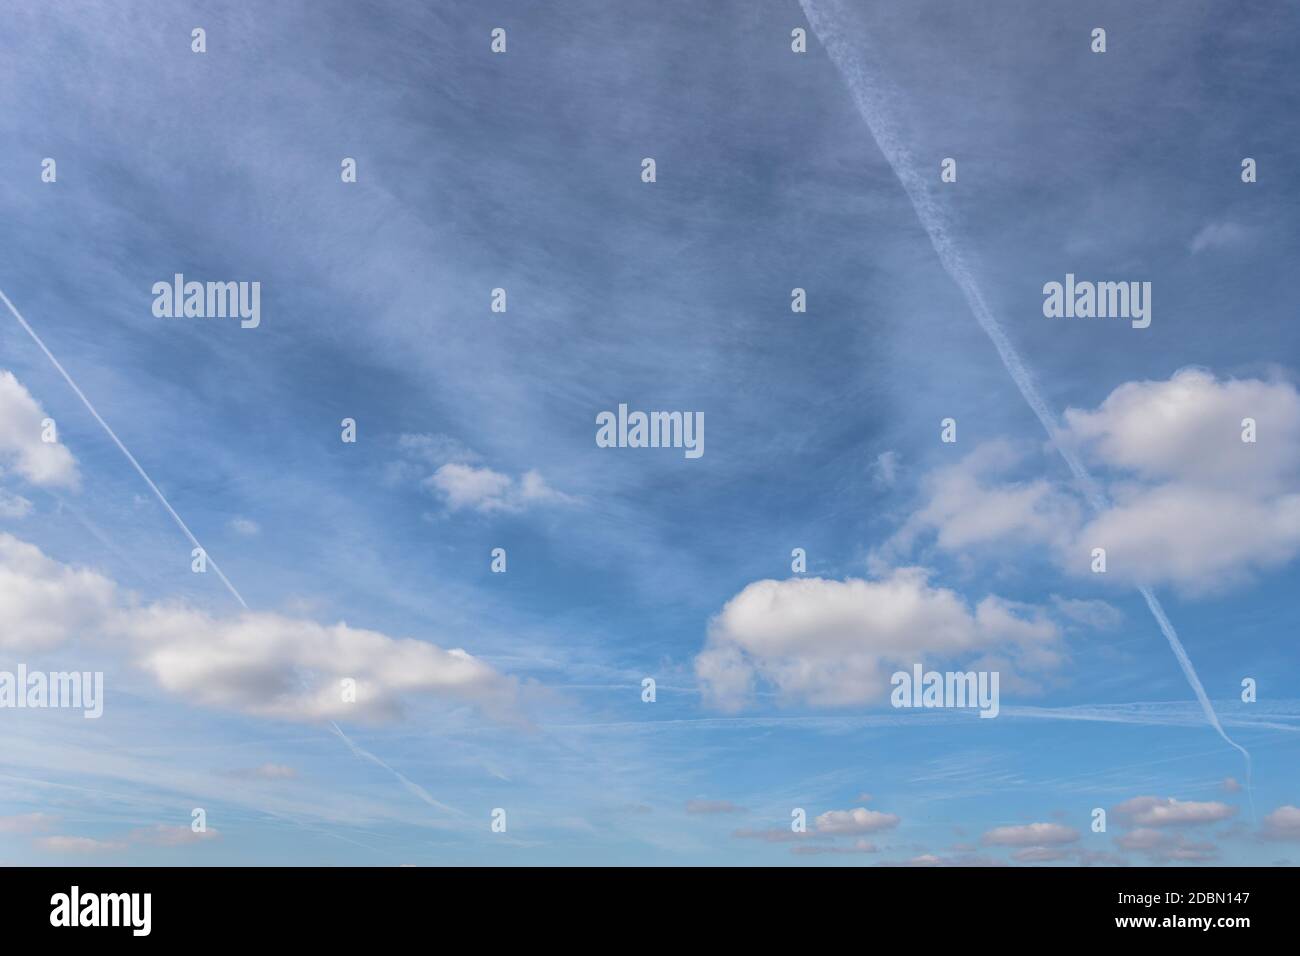 Pistes de jet, connues sous le nom de cheminches ou contrails sur fond bleu ciel avec des glaçures. Banque D'Images